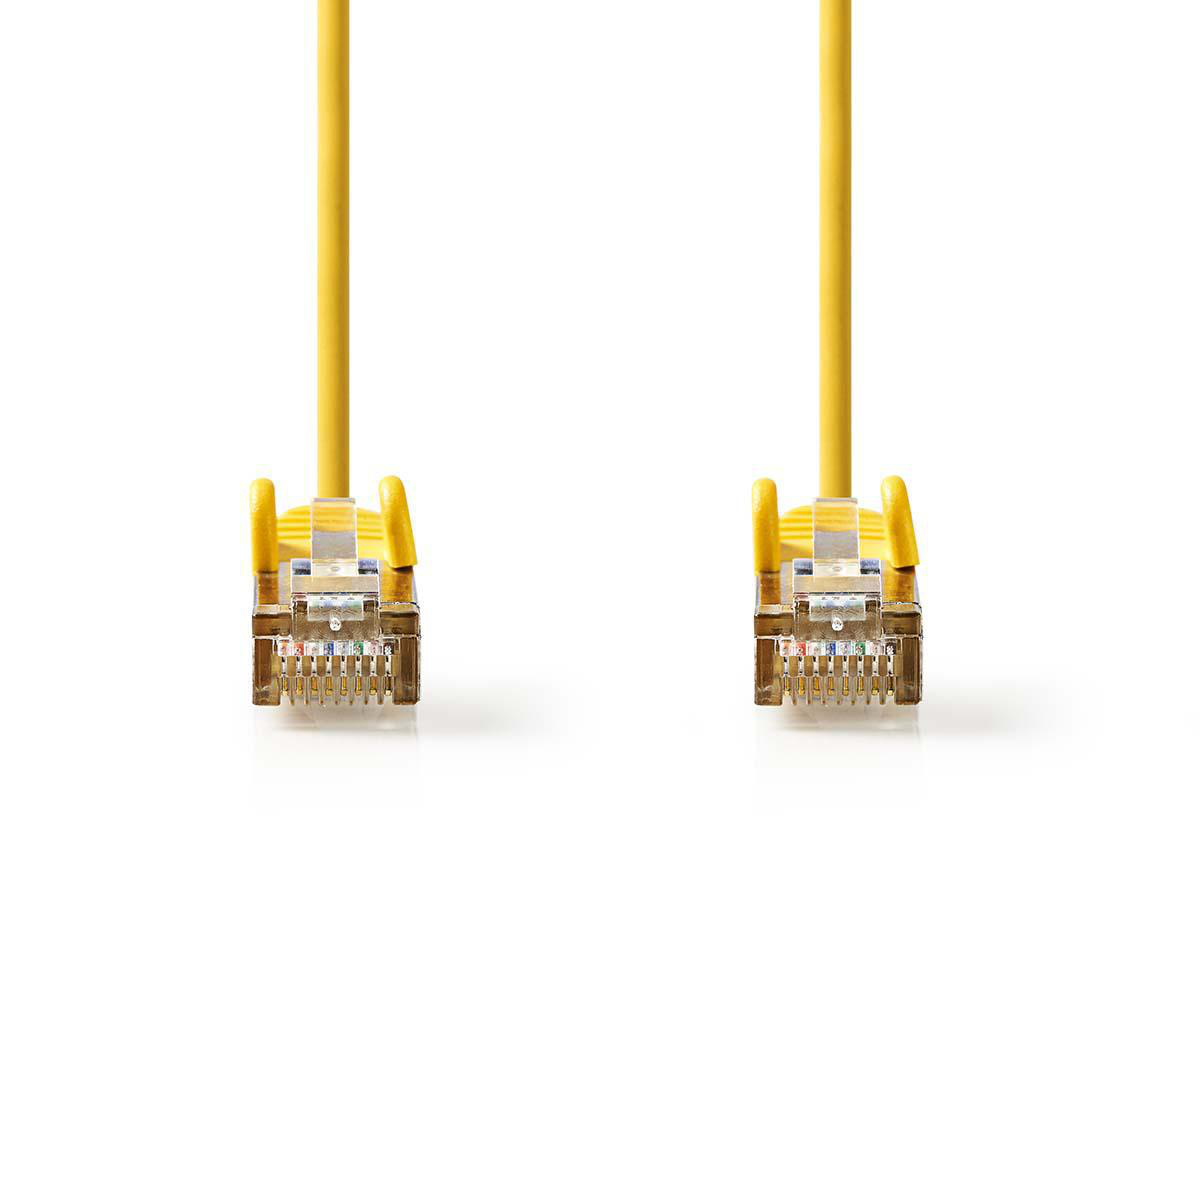 Nedis síťový kabel SF/UTP CAT5e, zástrčka RJ45 - zástrčka RJ45, 5 m, žlutá (CCGP85121YE50)